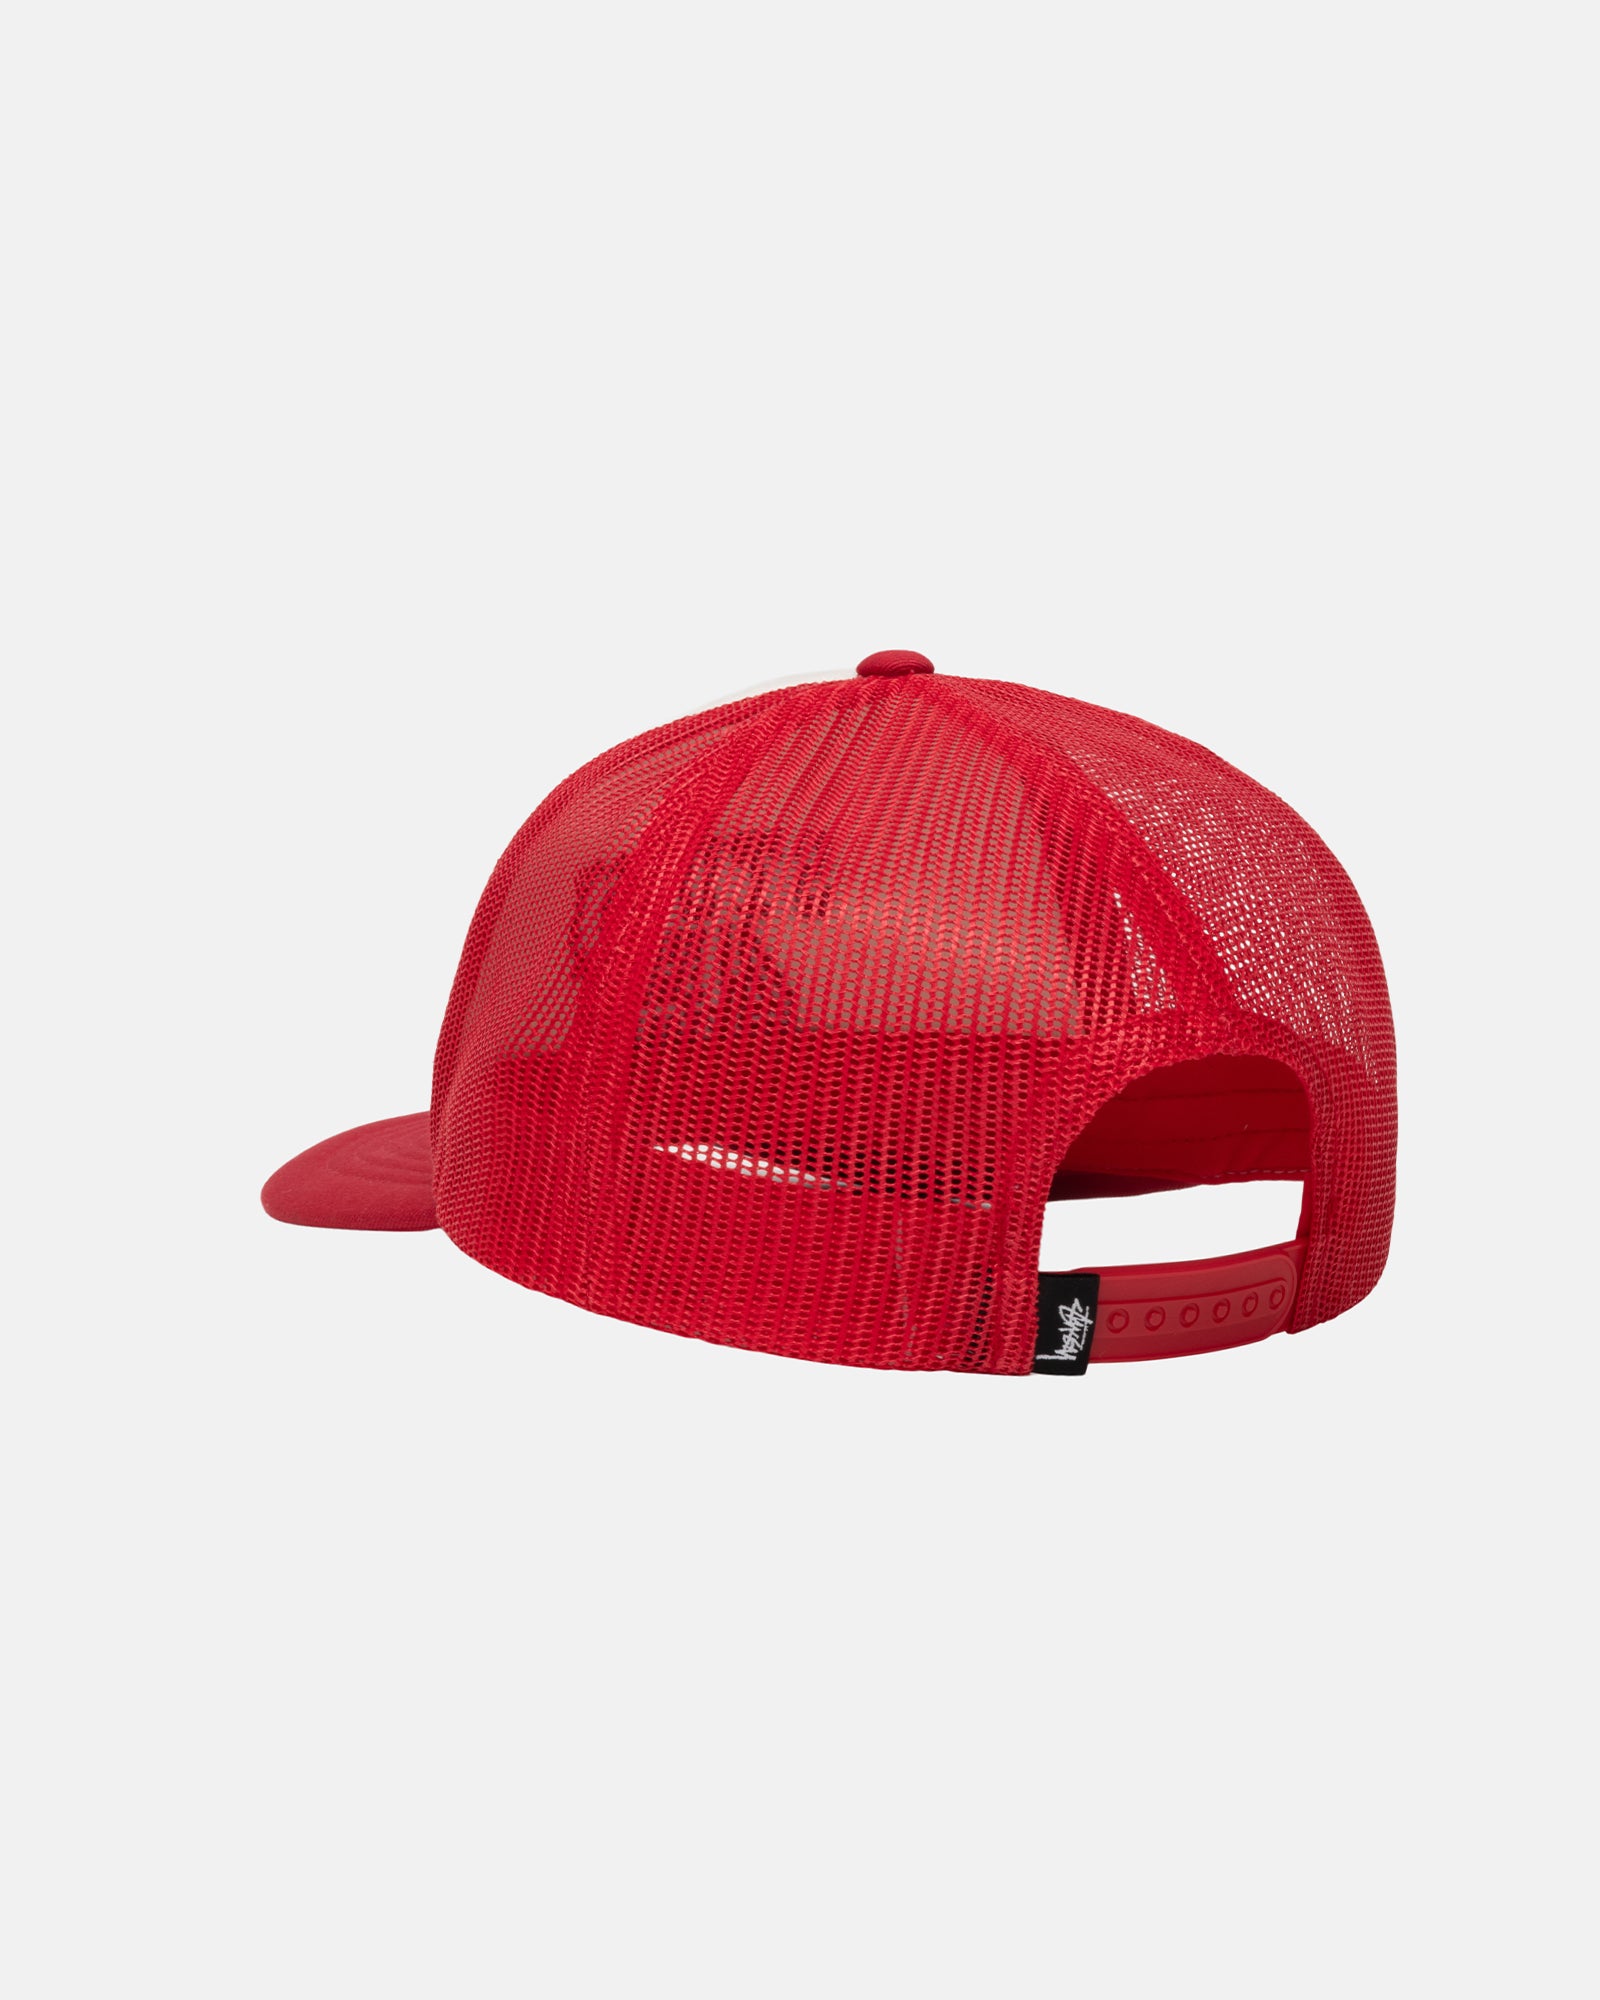 Trucker Big 4 Snapback Red Headwear